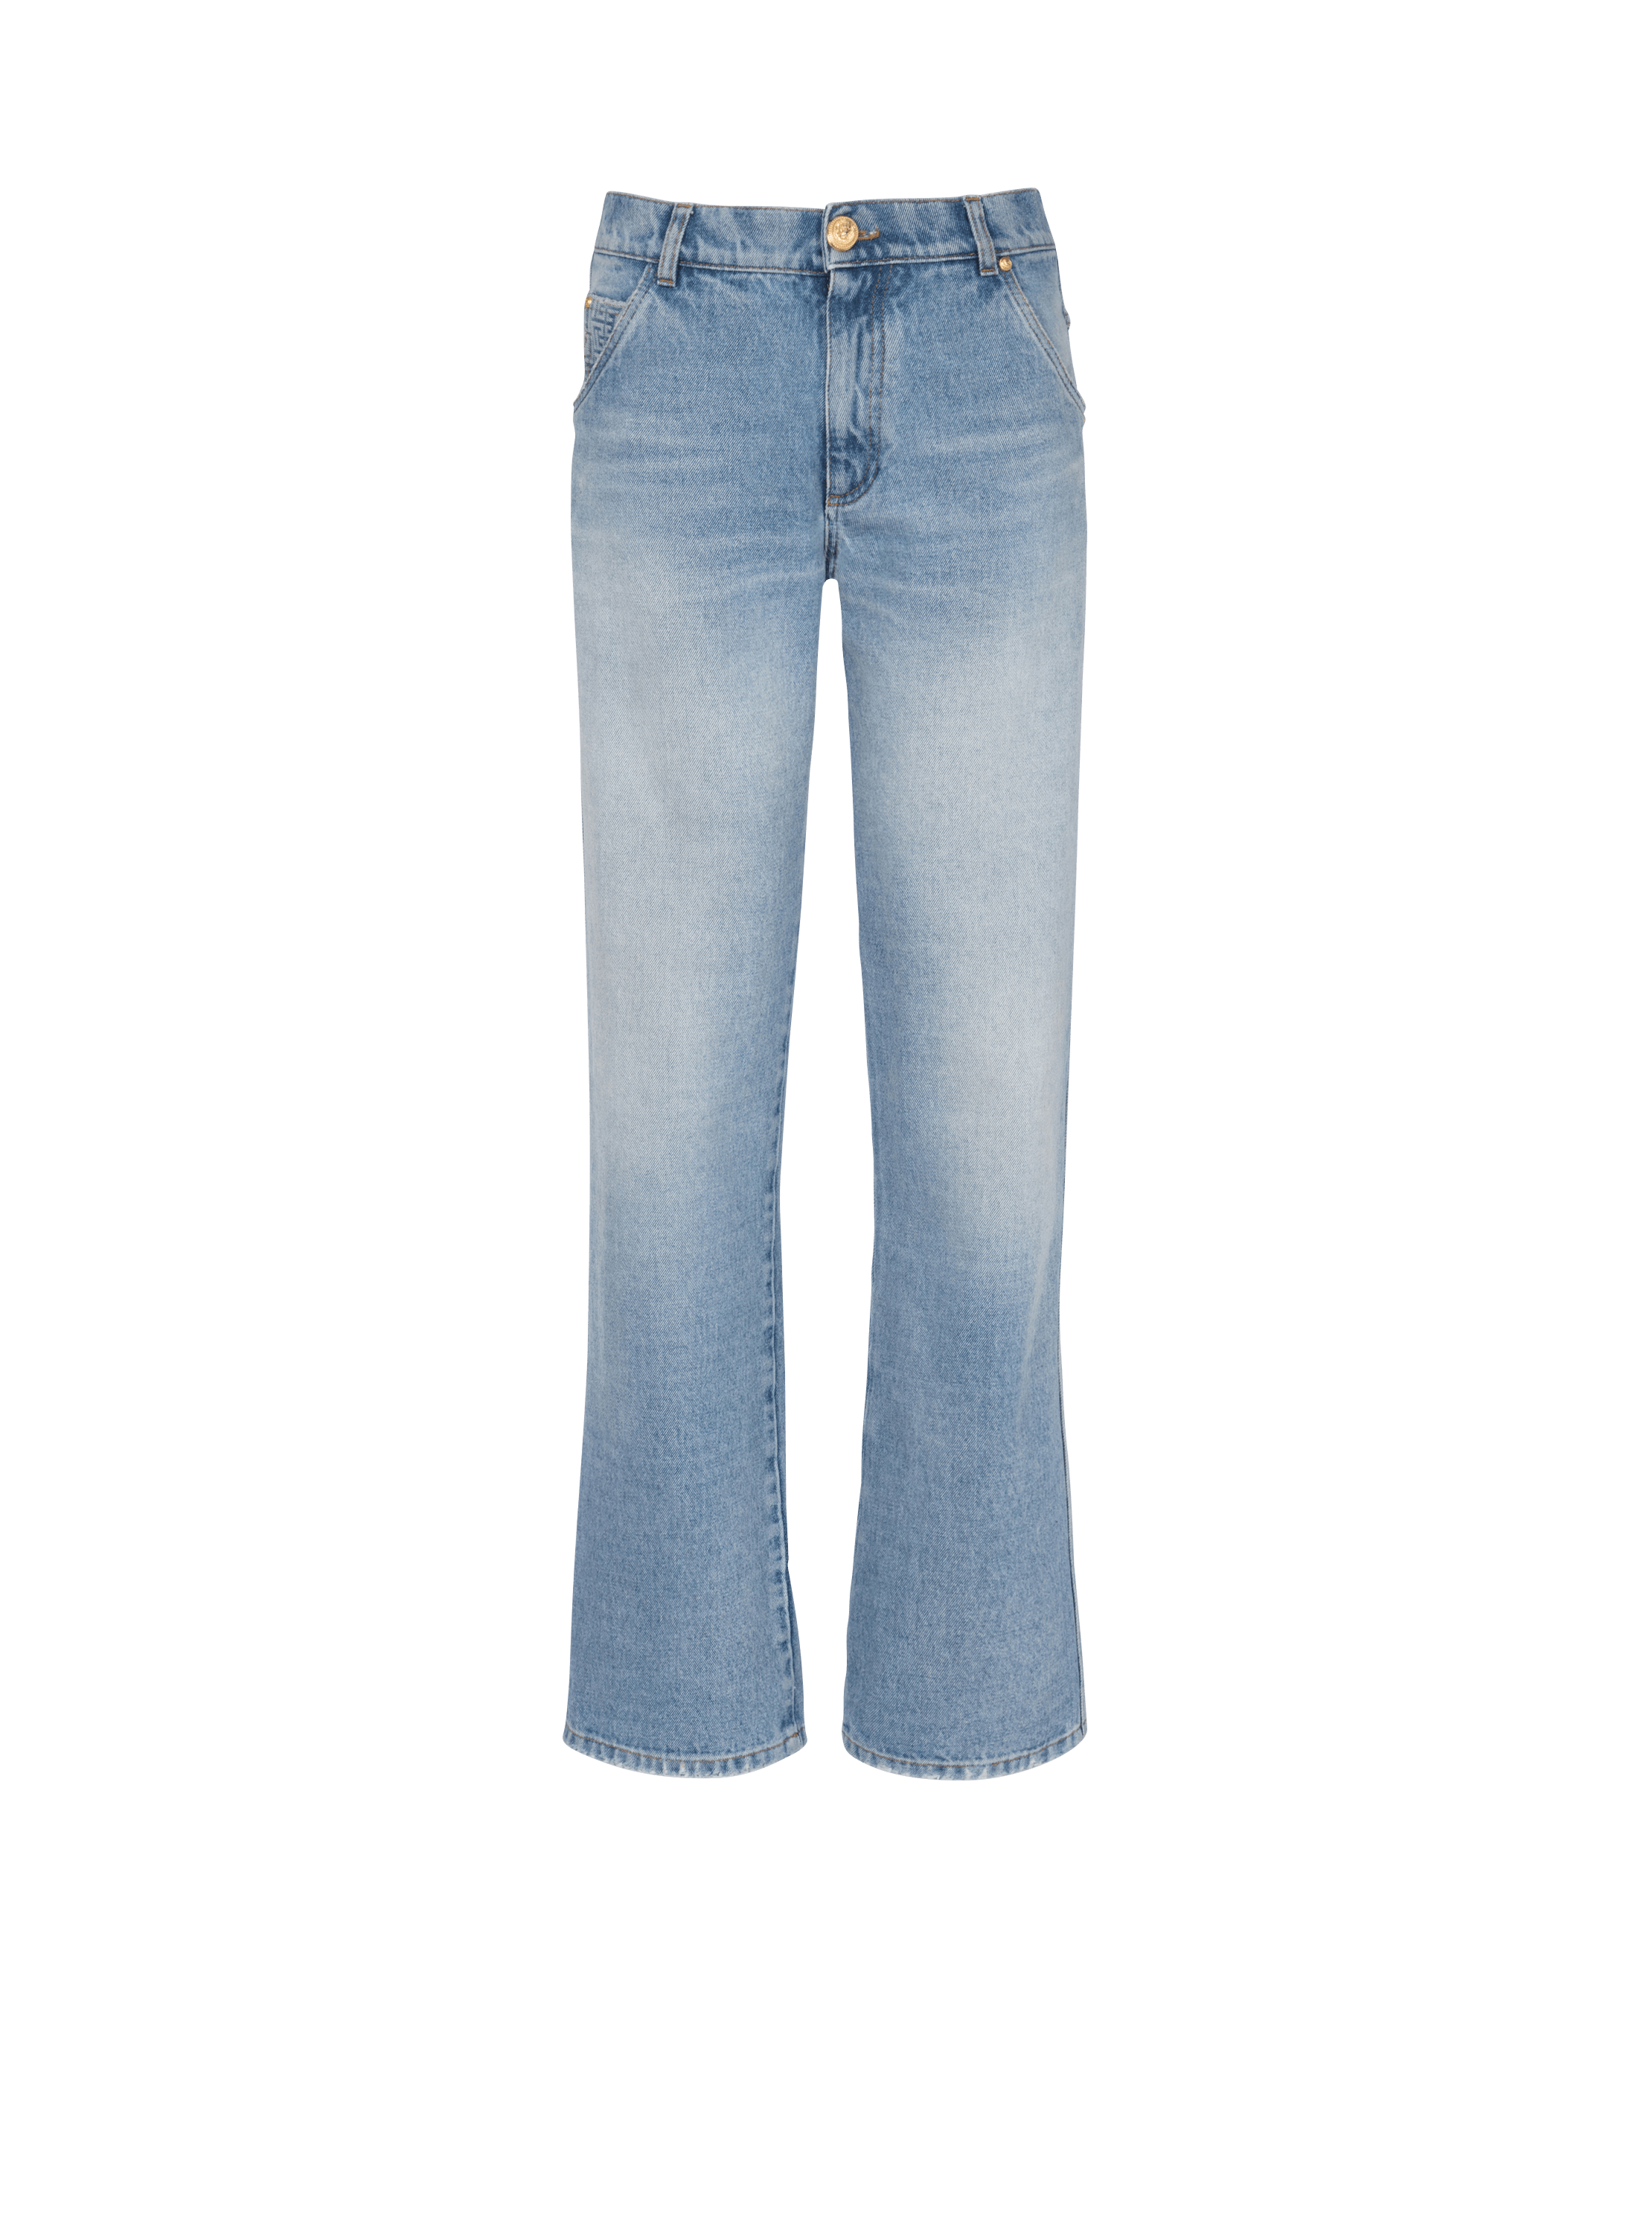 Wide-leg faded denim jeans